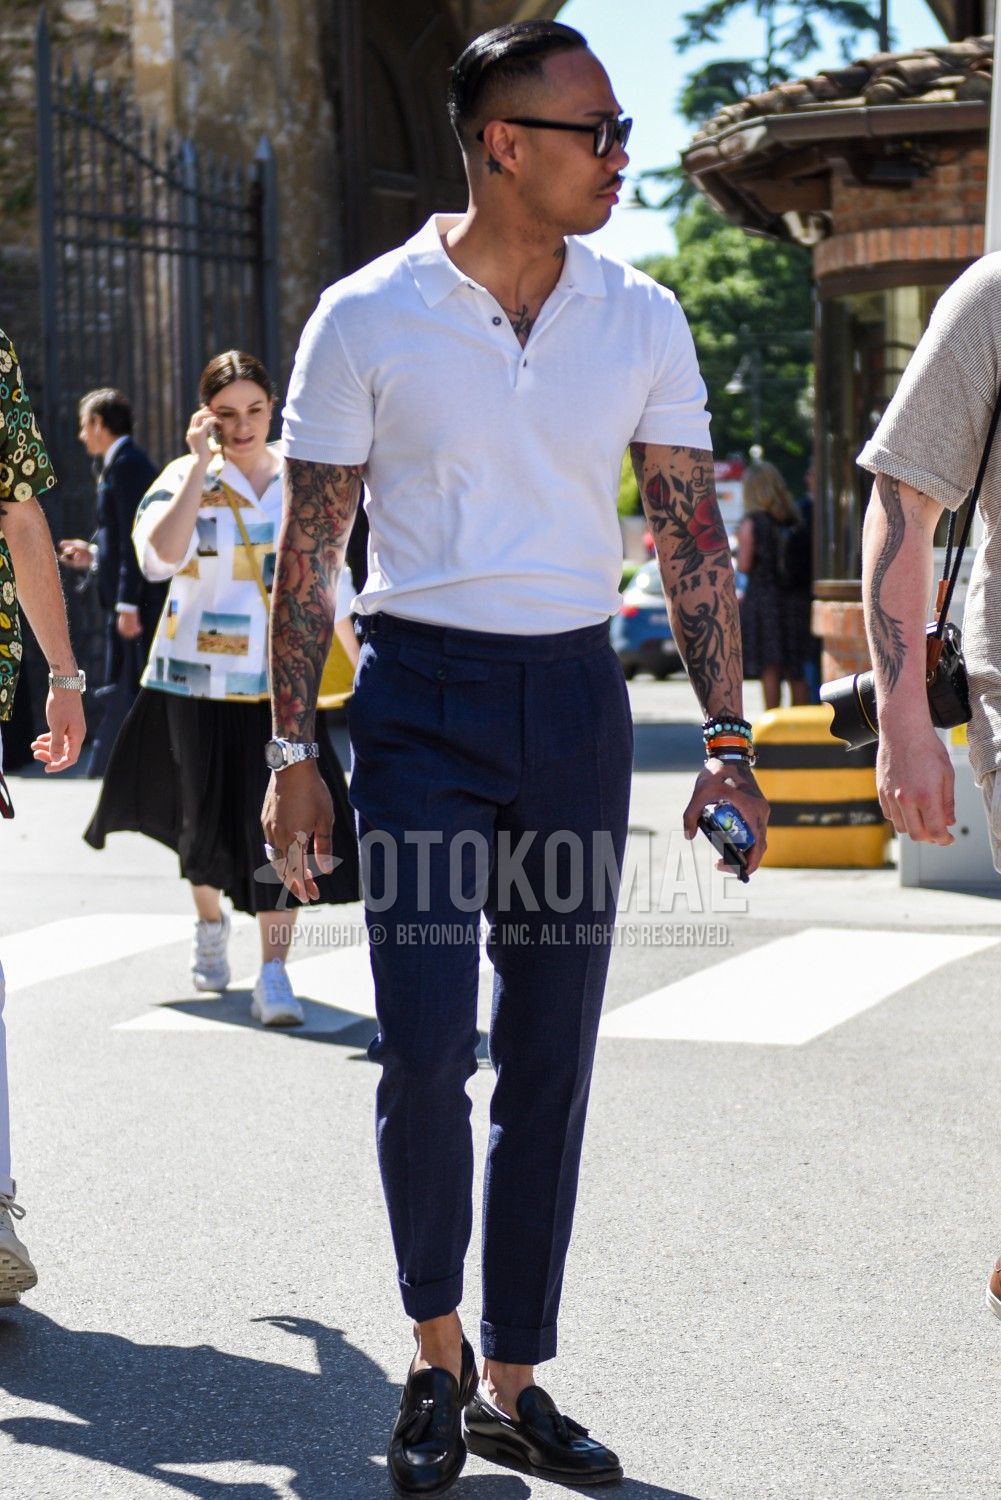 スラックス 夏コーデ メンズ特集 端正なシルエットで印象を整えた男の着こなし アイテムを紹介 メンズファッションメディア Otokomae